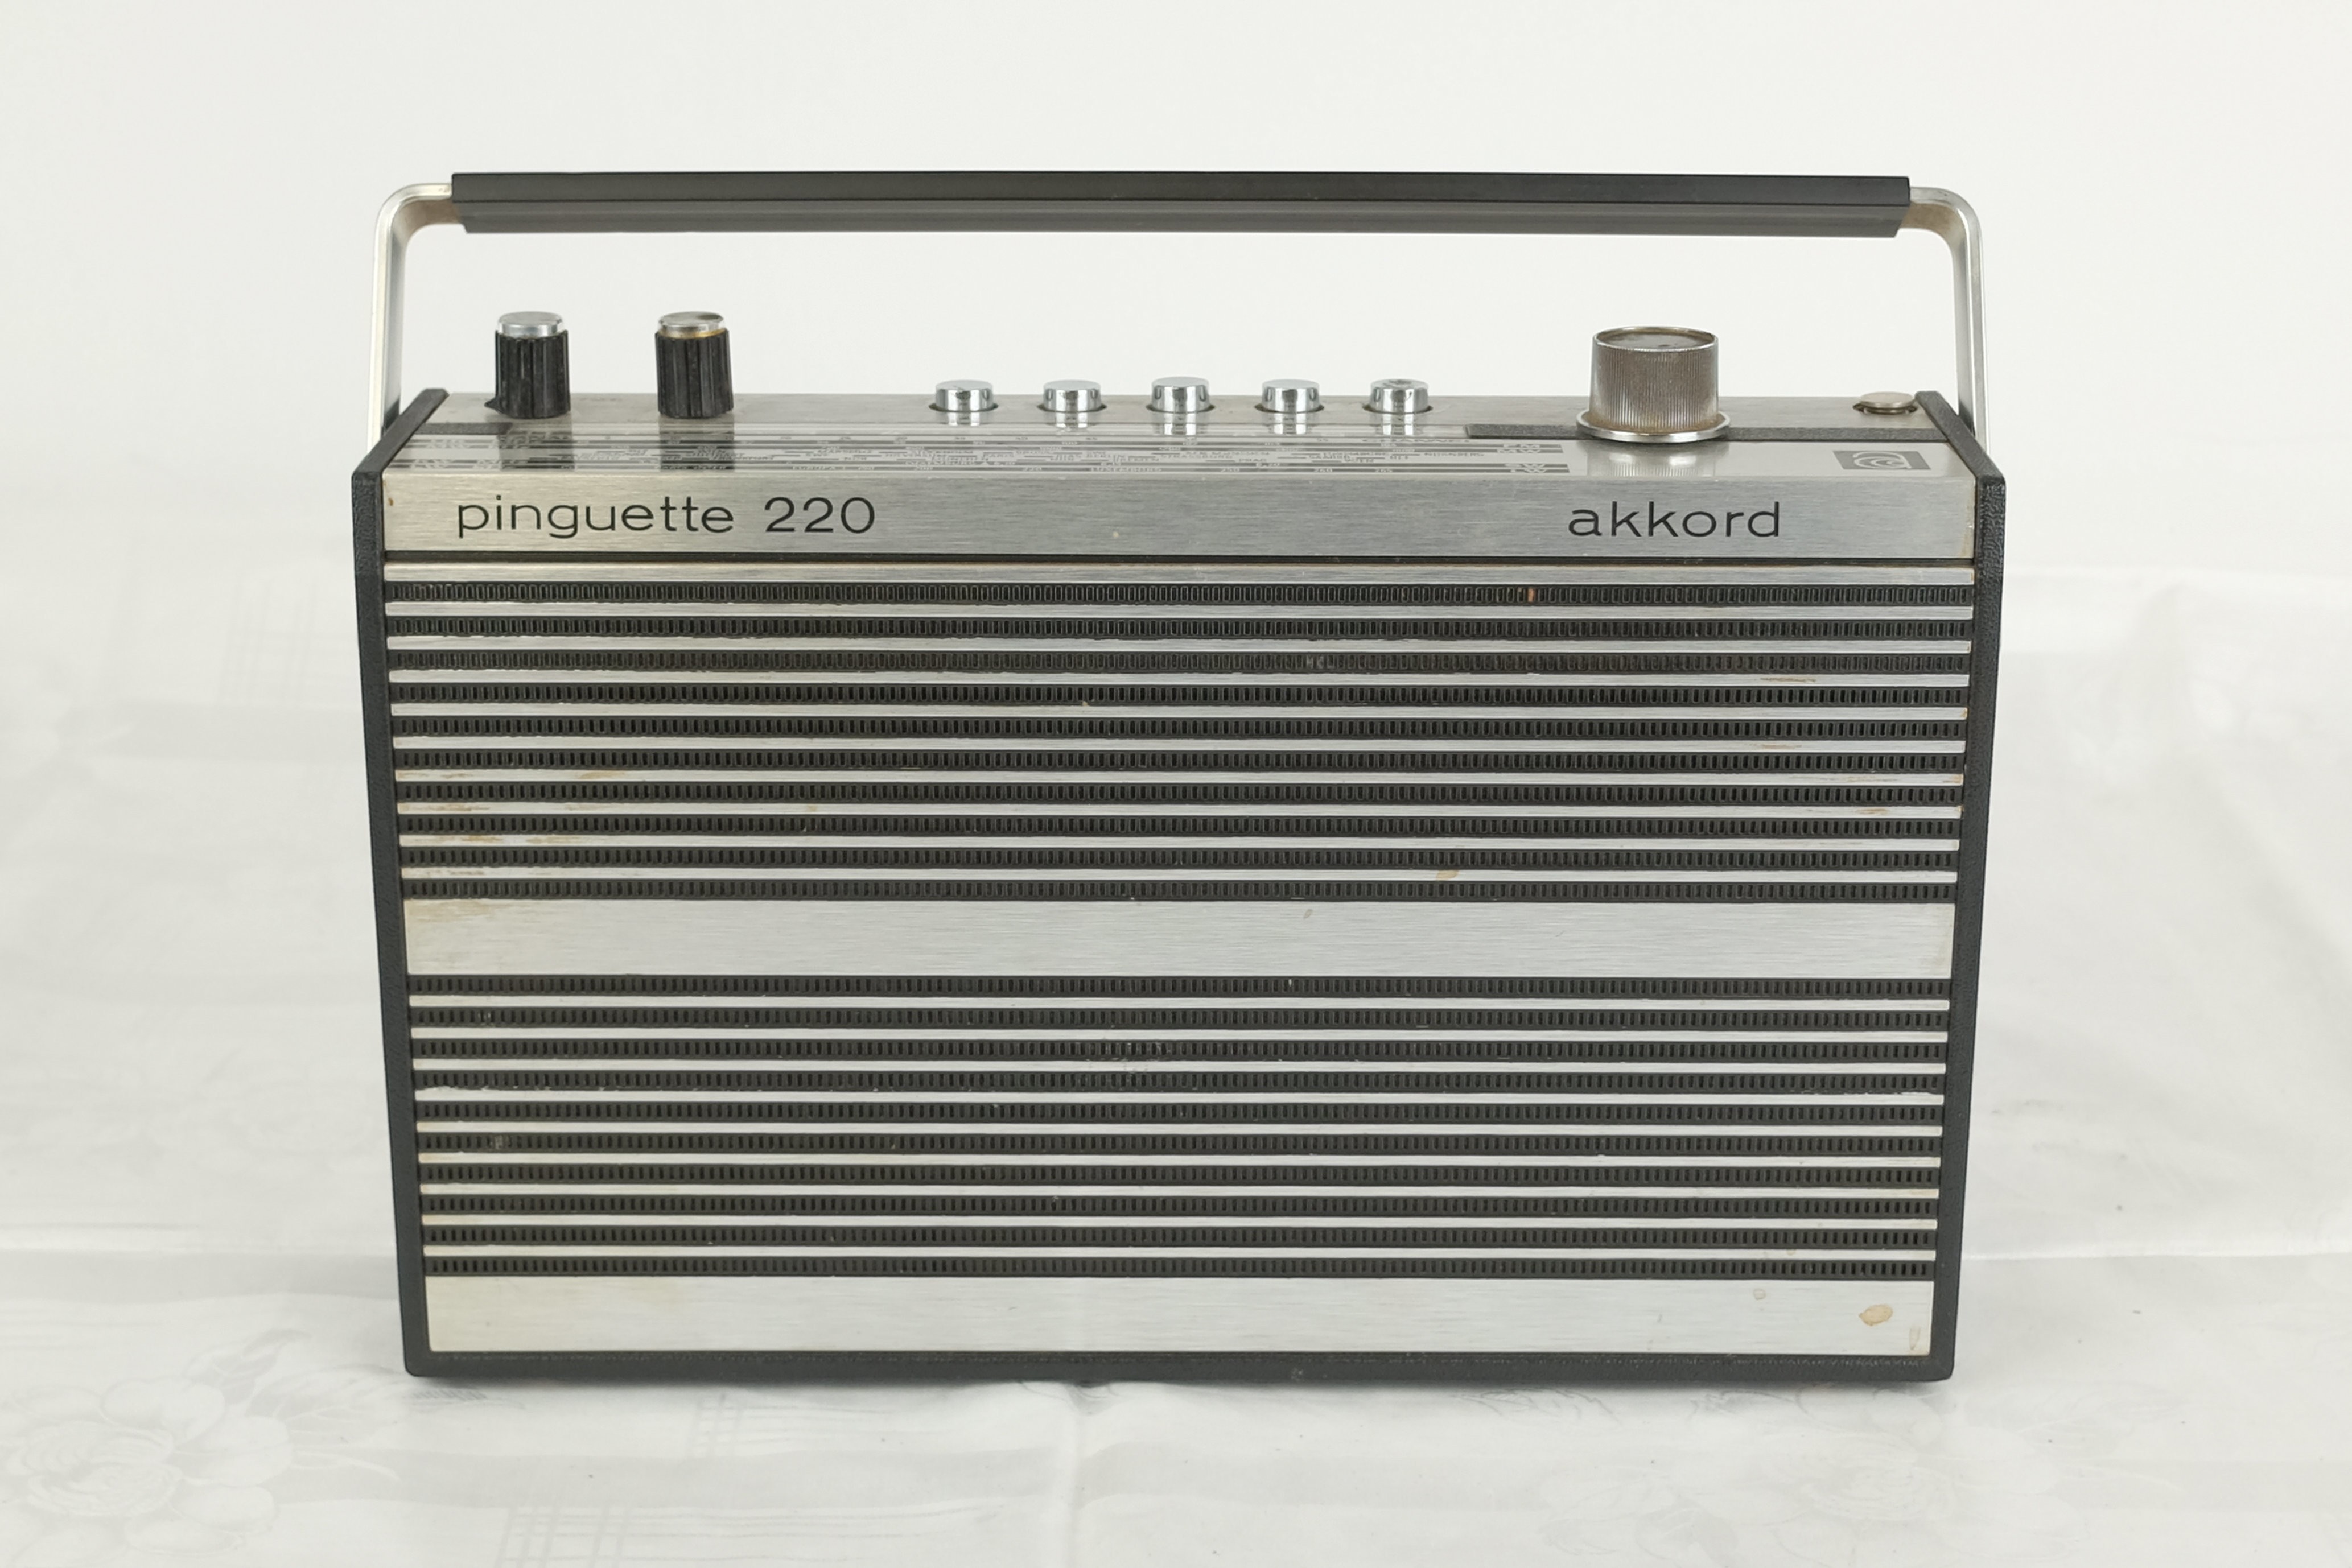 Kofferradio Akkord pinguette 220 (Volkskunde- und Freilichtmuseum Roscheider Hof CC0)